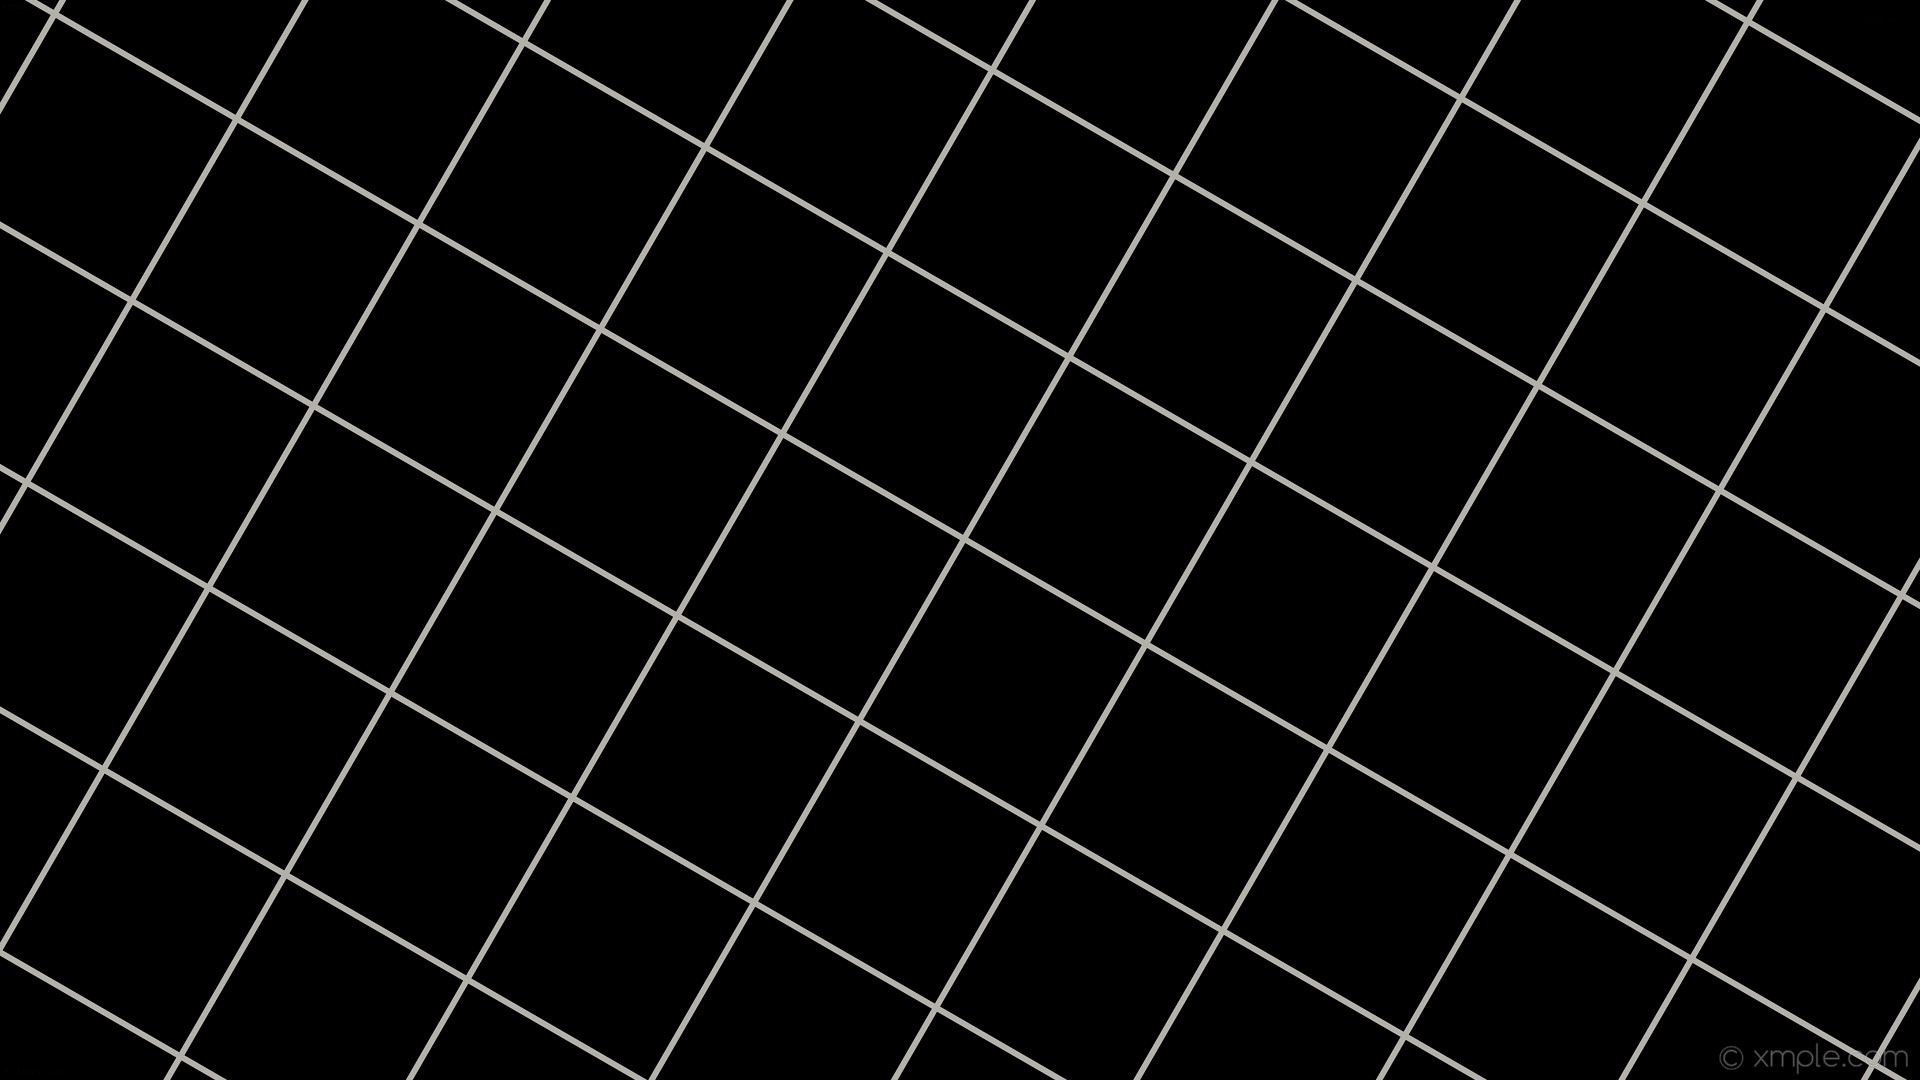 1920x1080 wallpaper black white graph paper grid floral white #000000 #fffaf0 60Â° 6px  210px